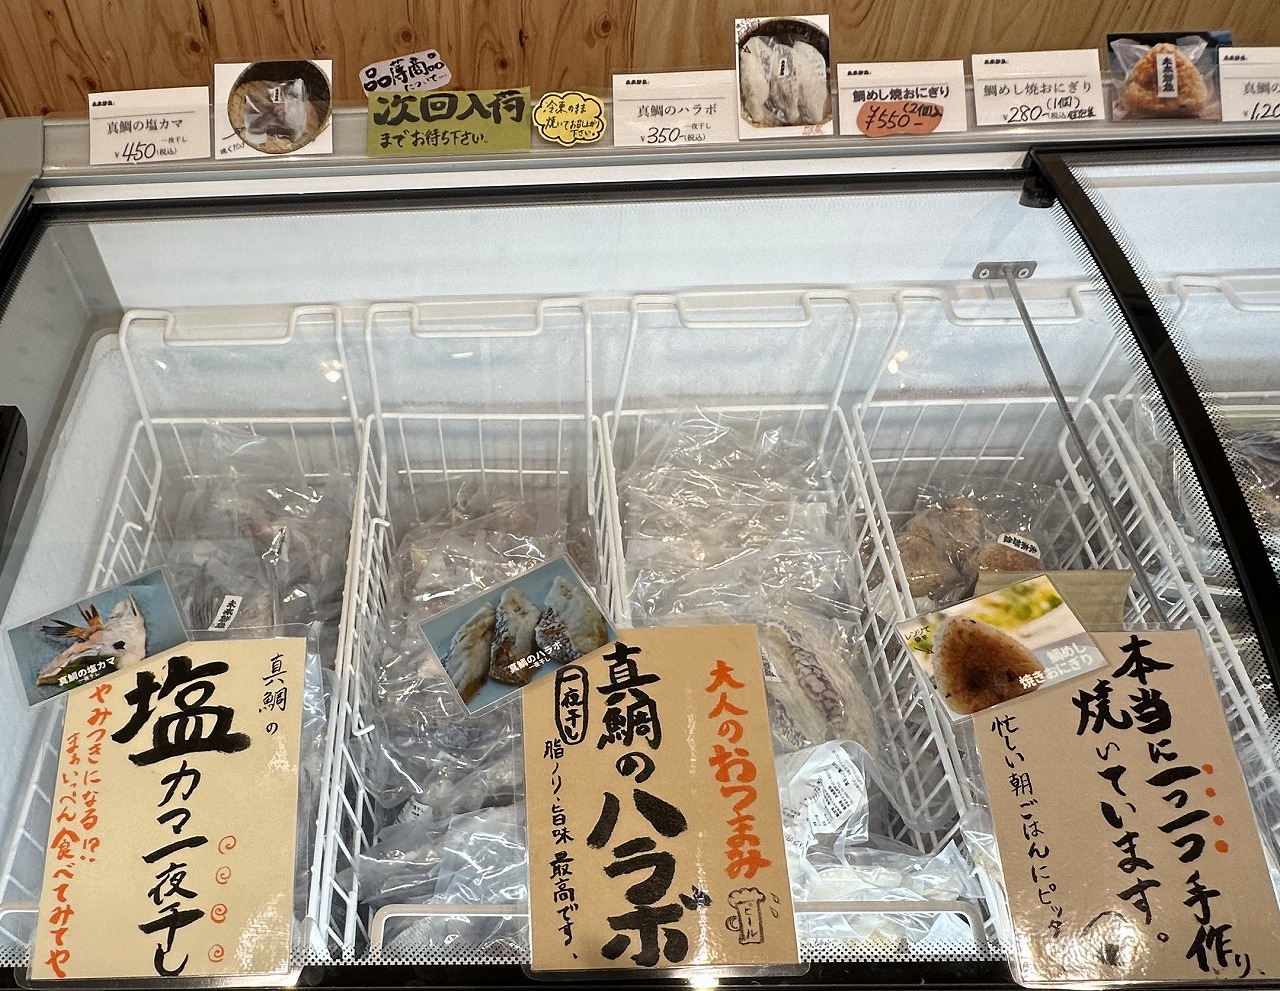 無人販売所「未来鮮魚 六甲道店」